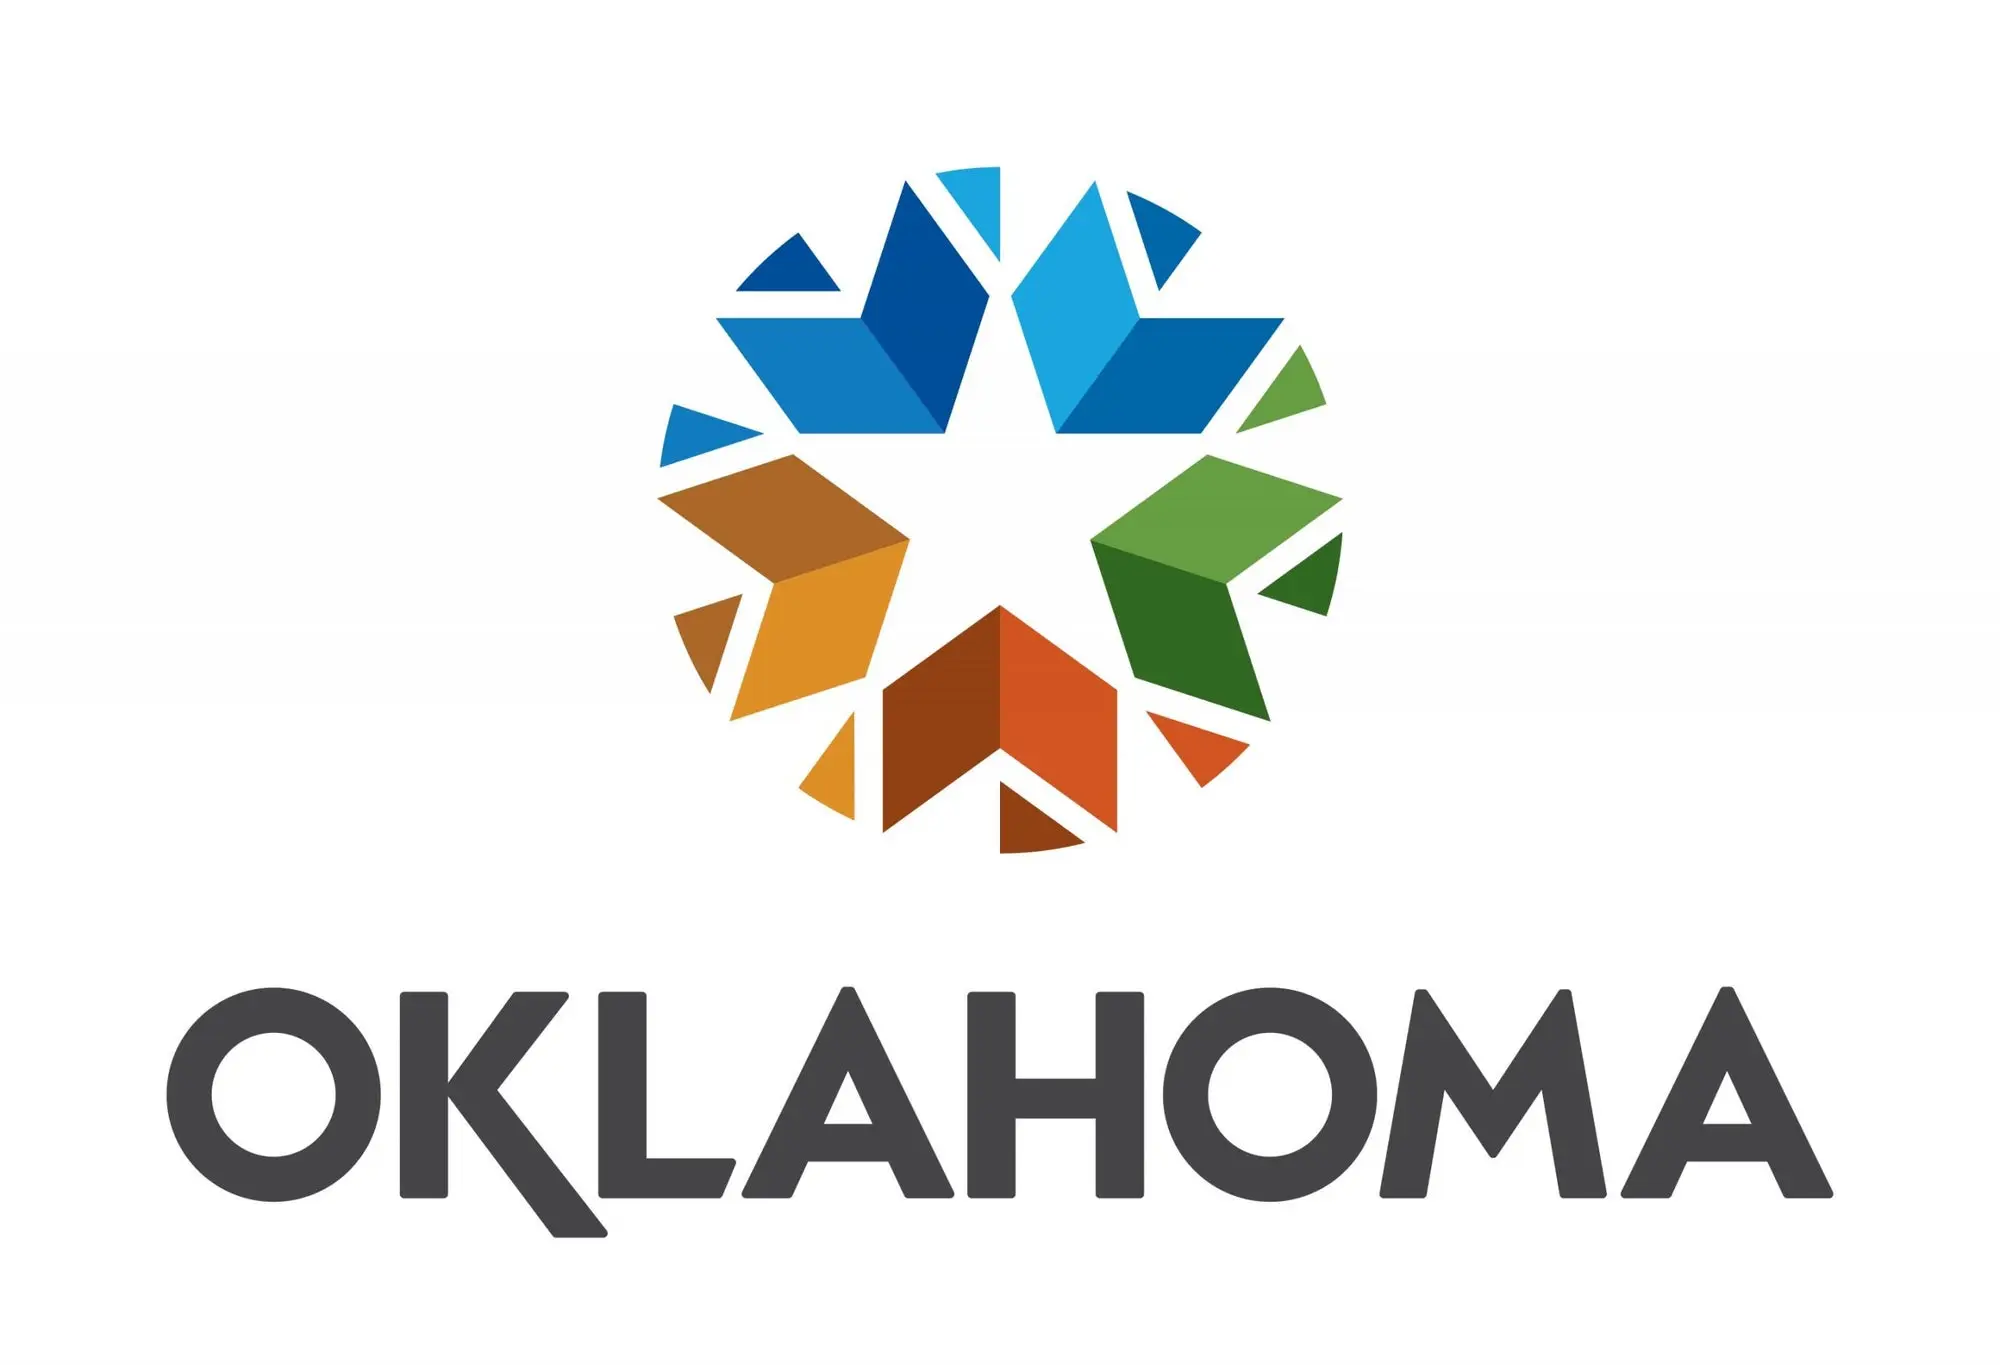 Oklahoma logo.